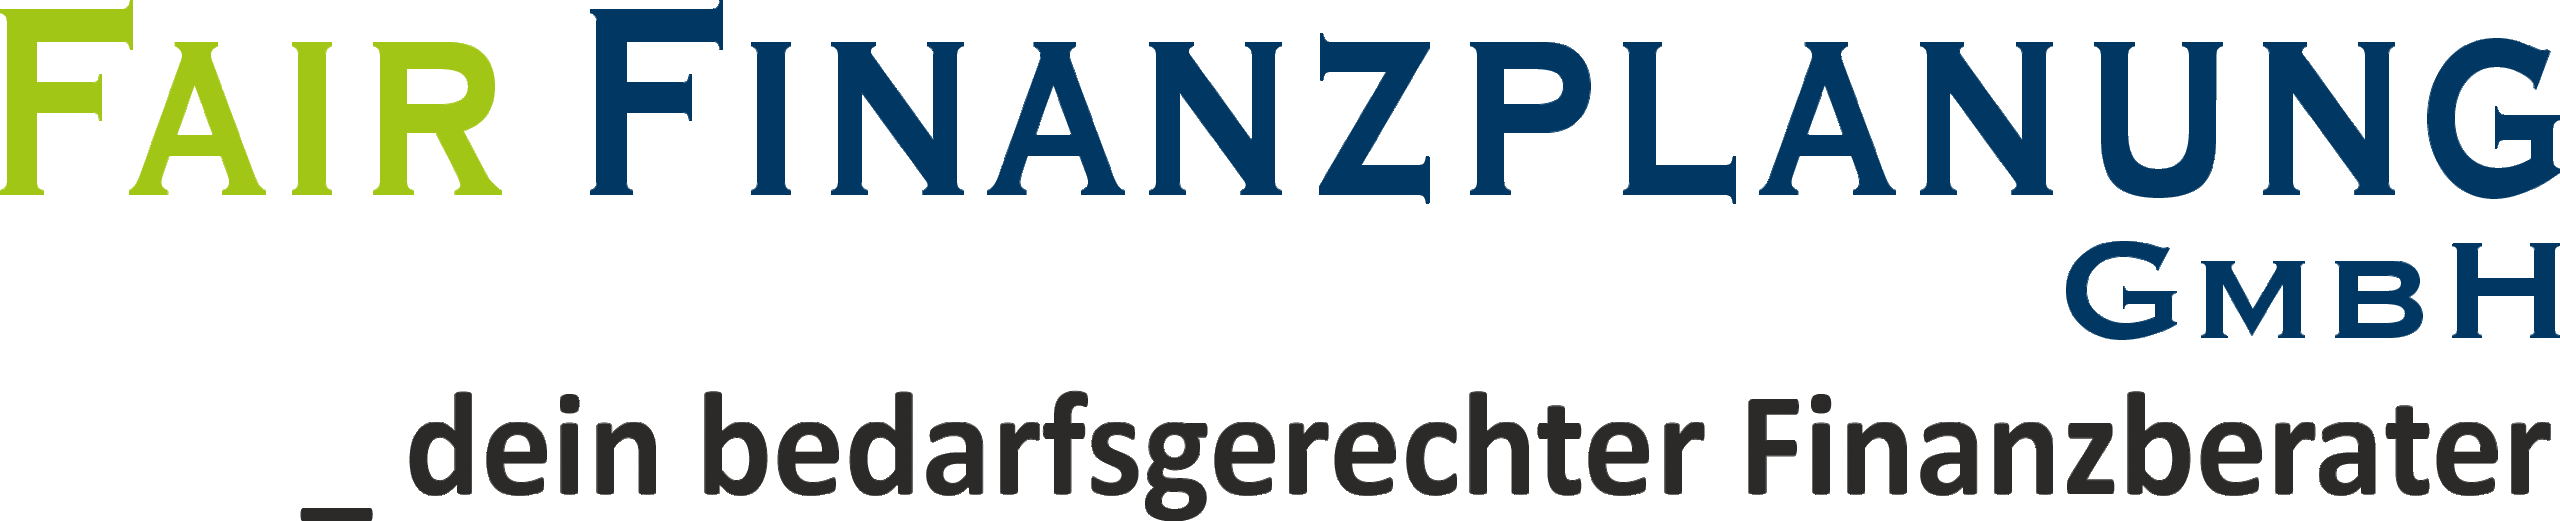 Fair Finanzplanung GmbH